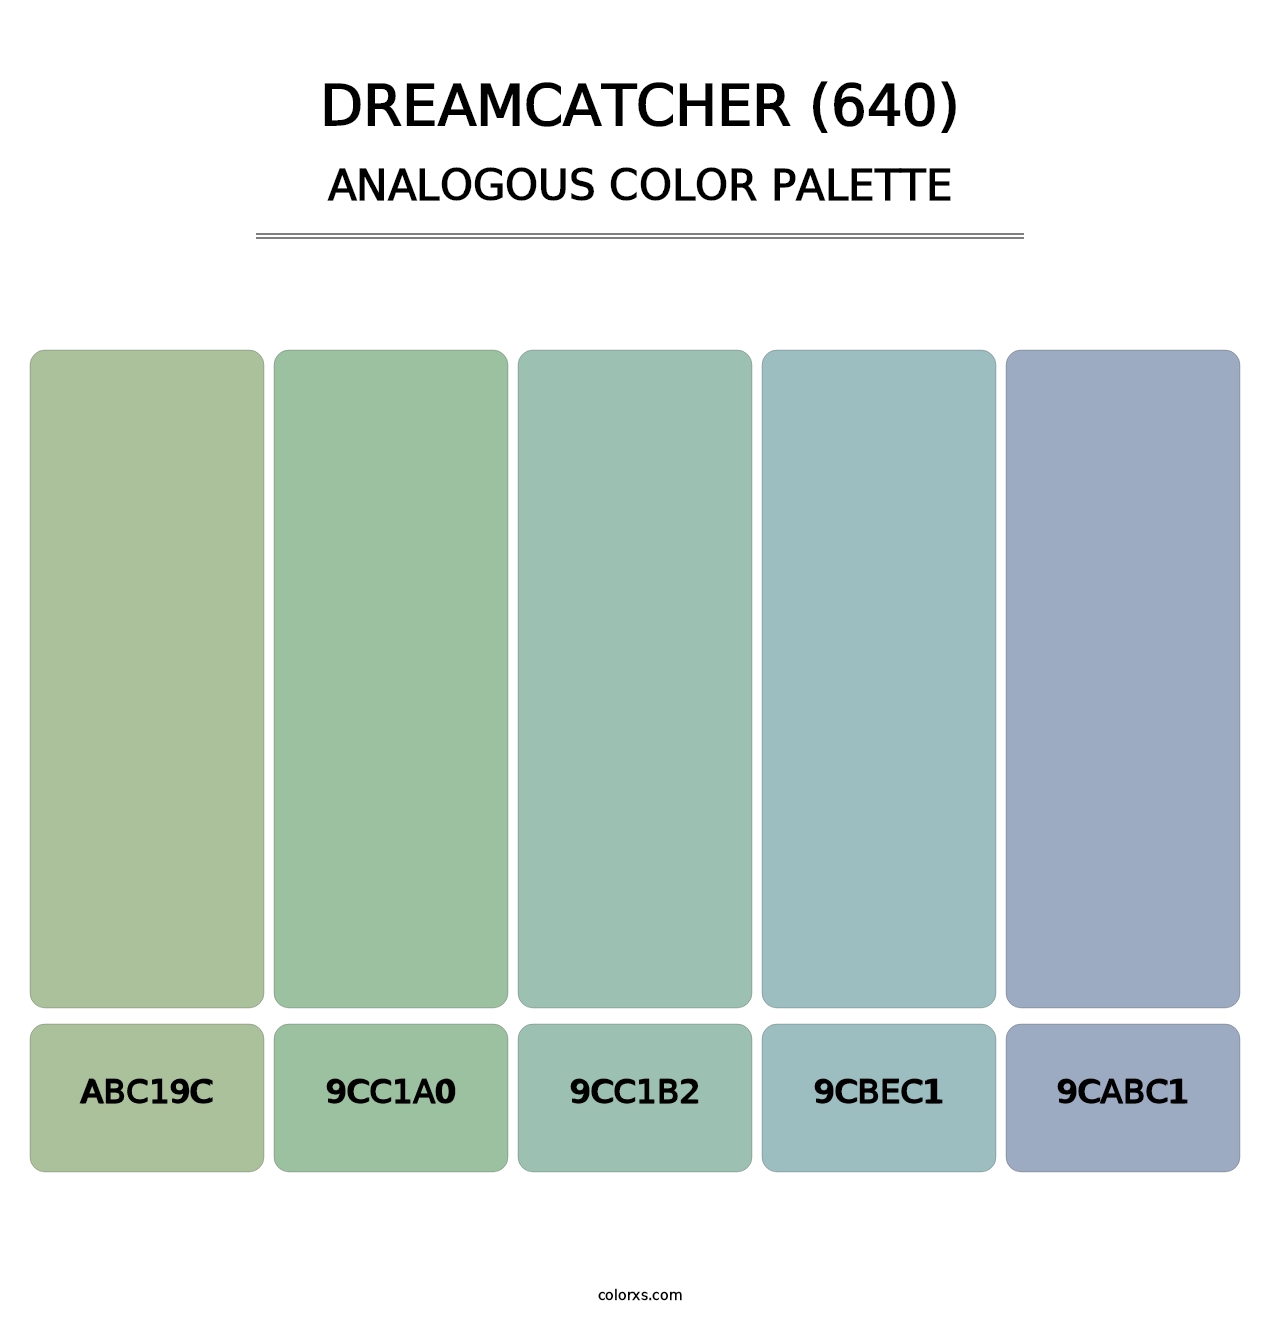 Dreamcatcher (640) - Analogous Color Palette